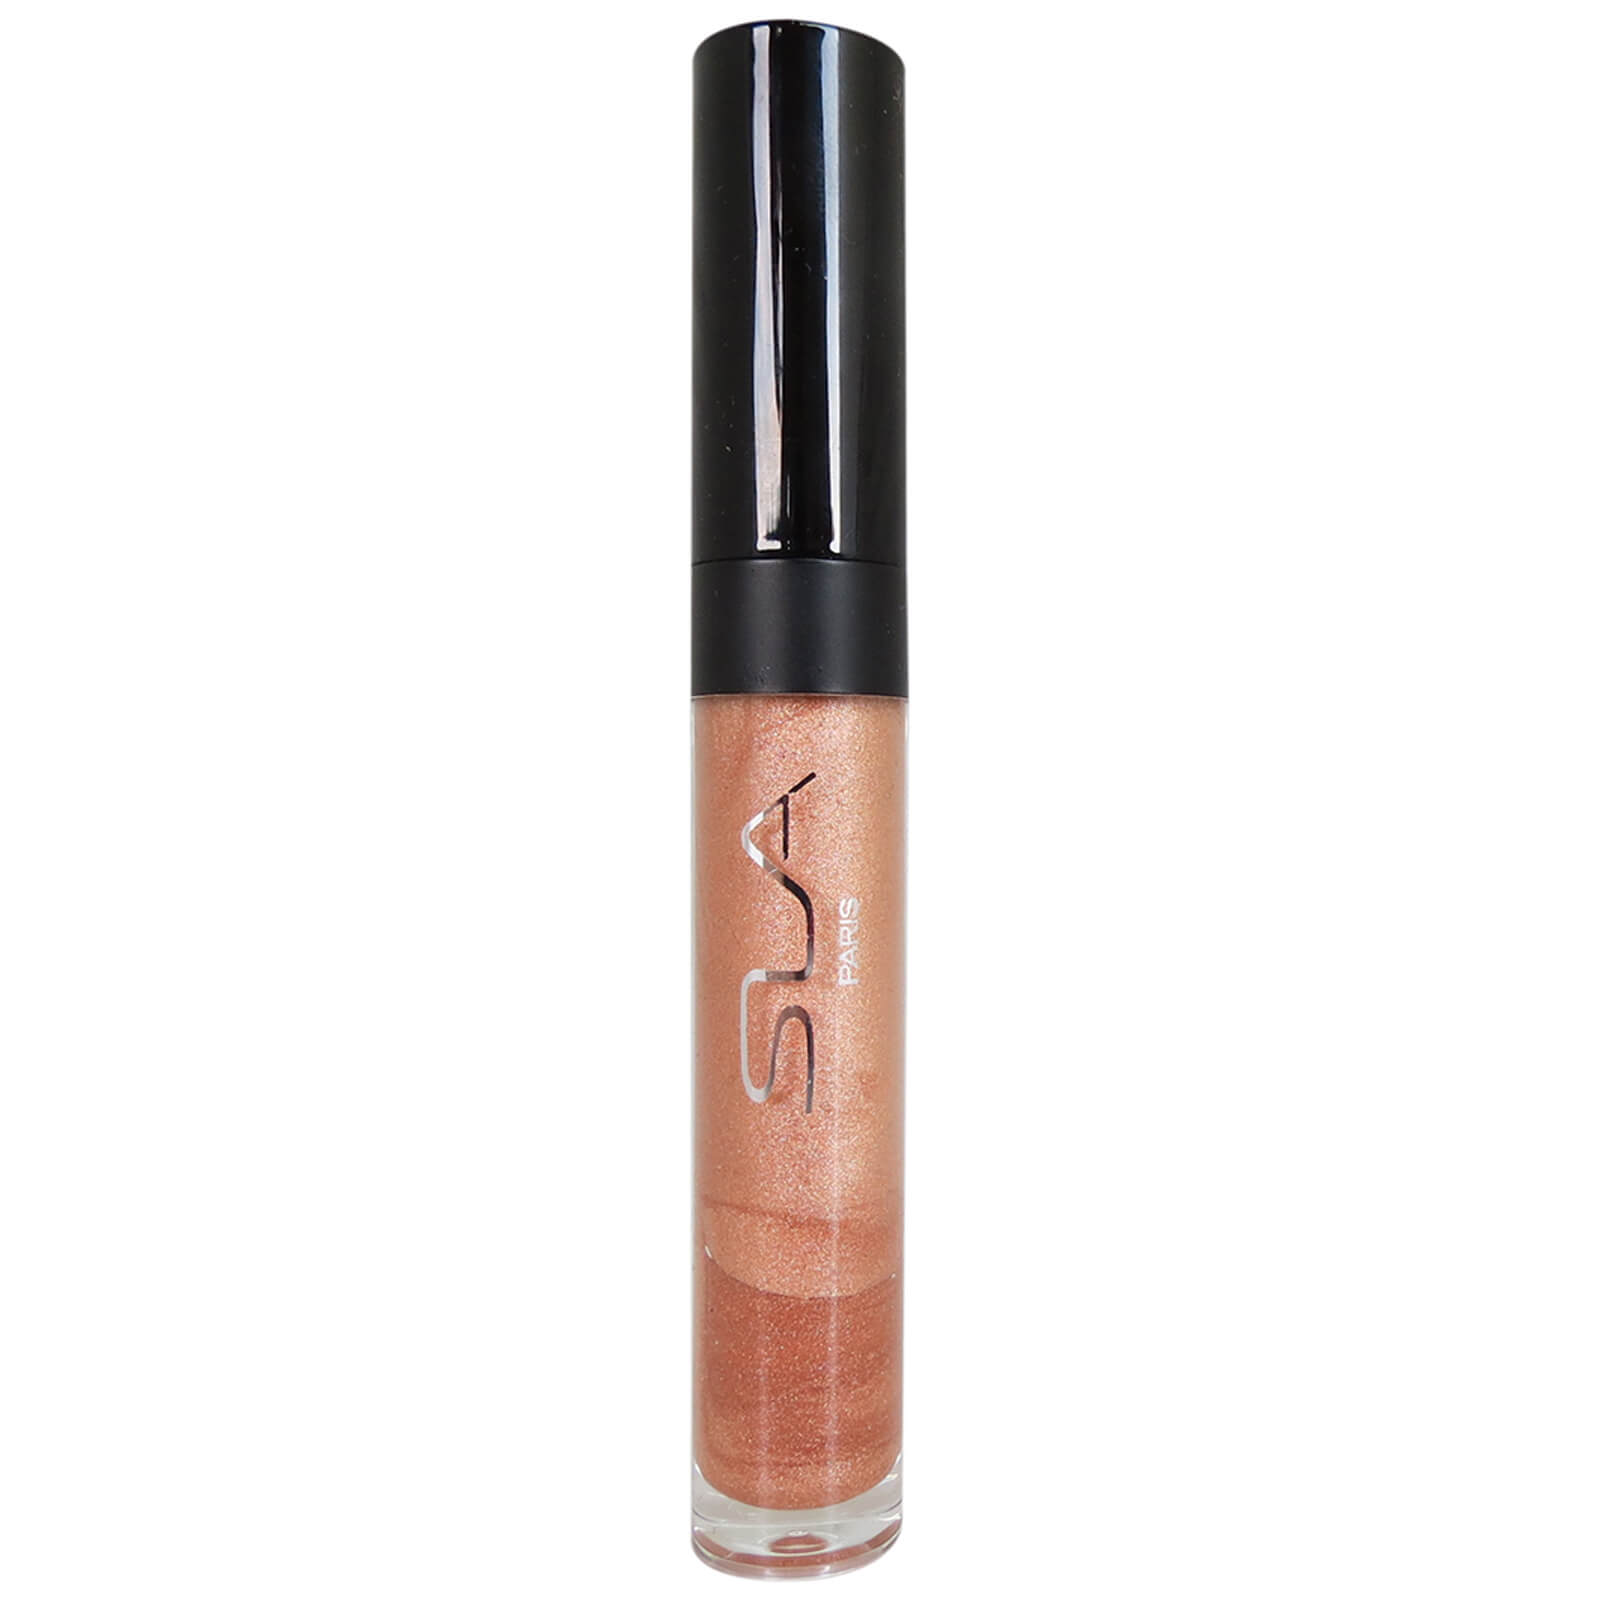 SLA Paris Fruity Lip Gloss 5ml (Various Shades) - Copper Transparent Lacquer